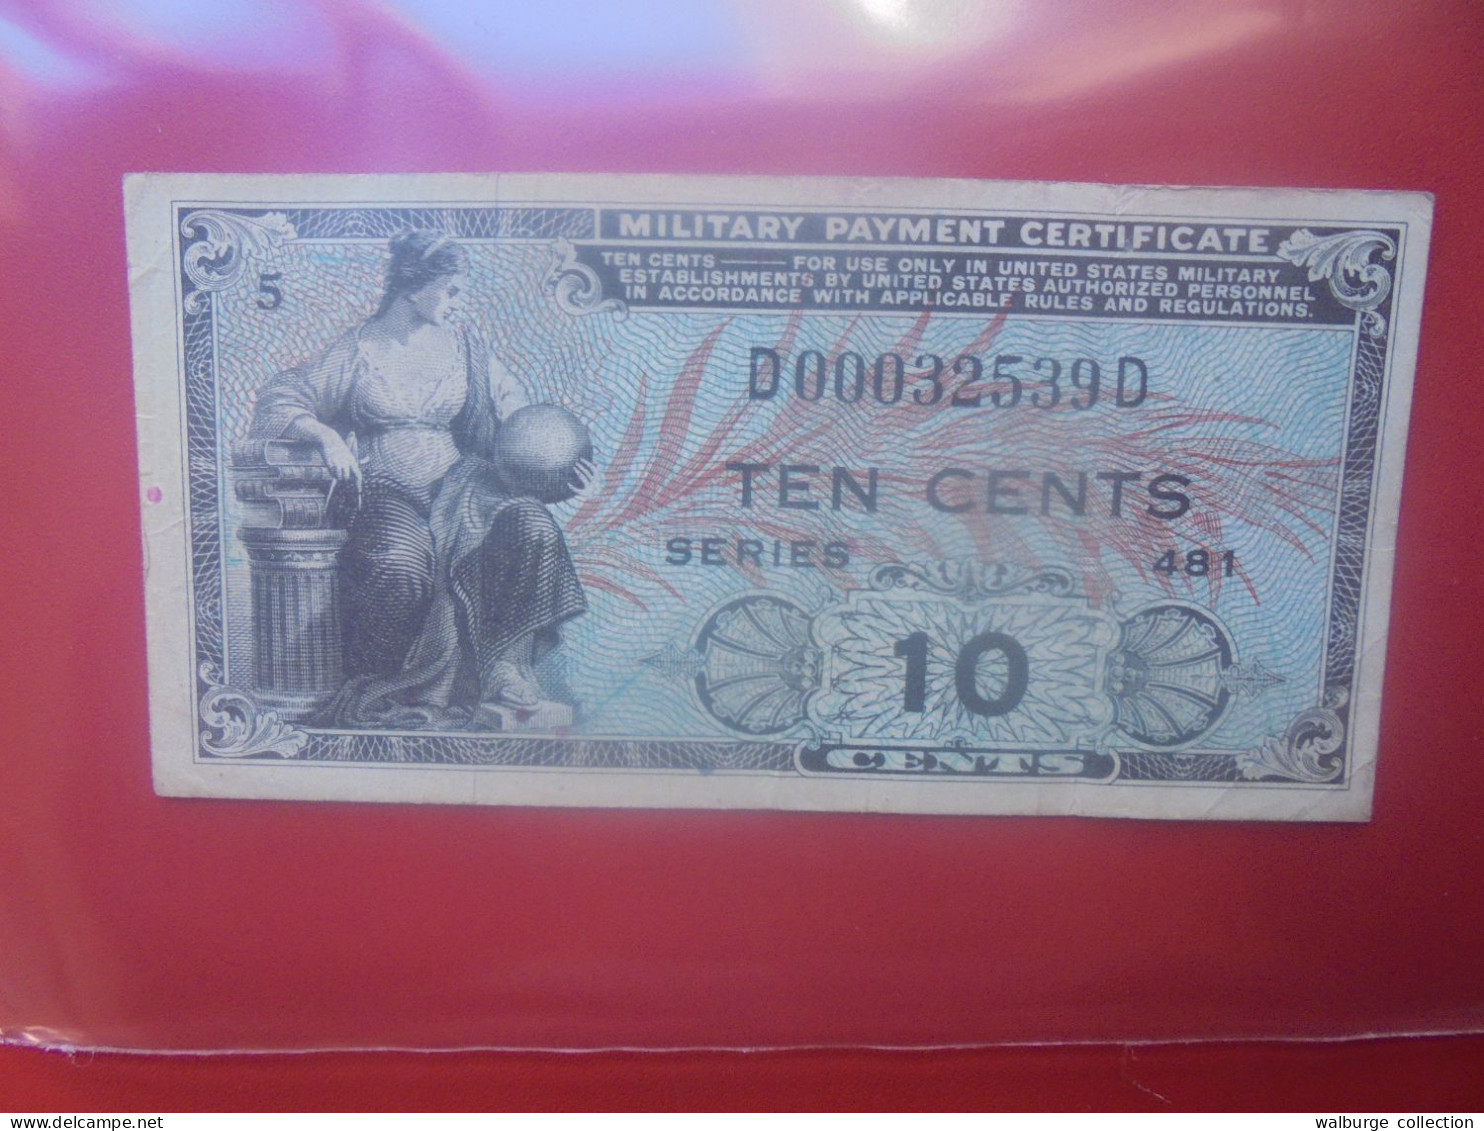 U.S.A (MILITARY) 10 Cents Série 481 (1951-54) Circuler (B.33) - 1951-1954 - Series 481